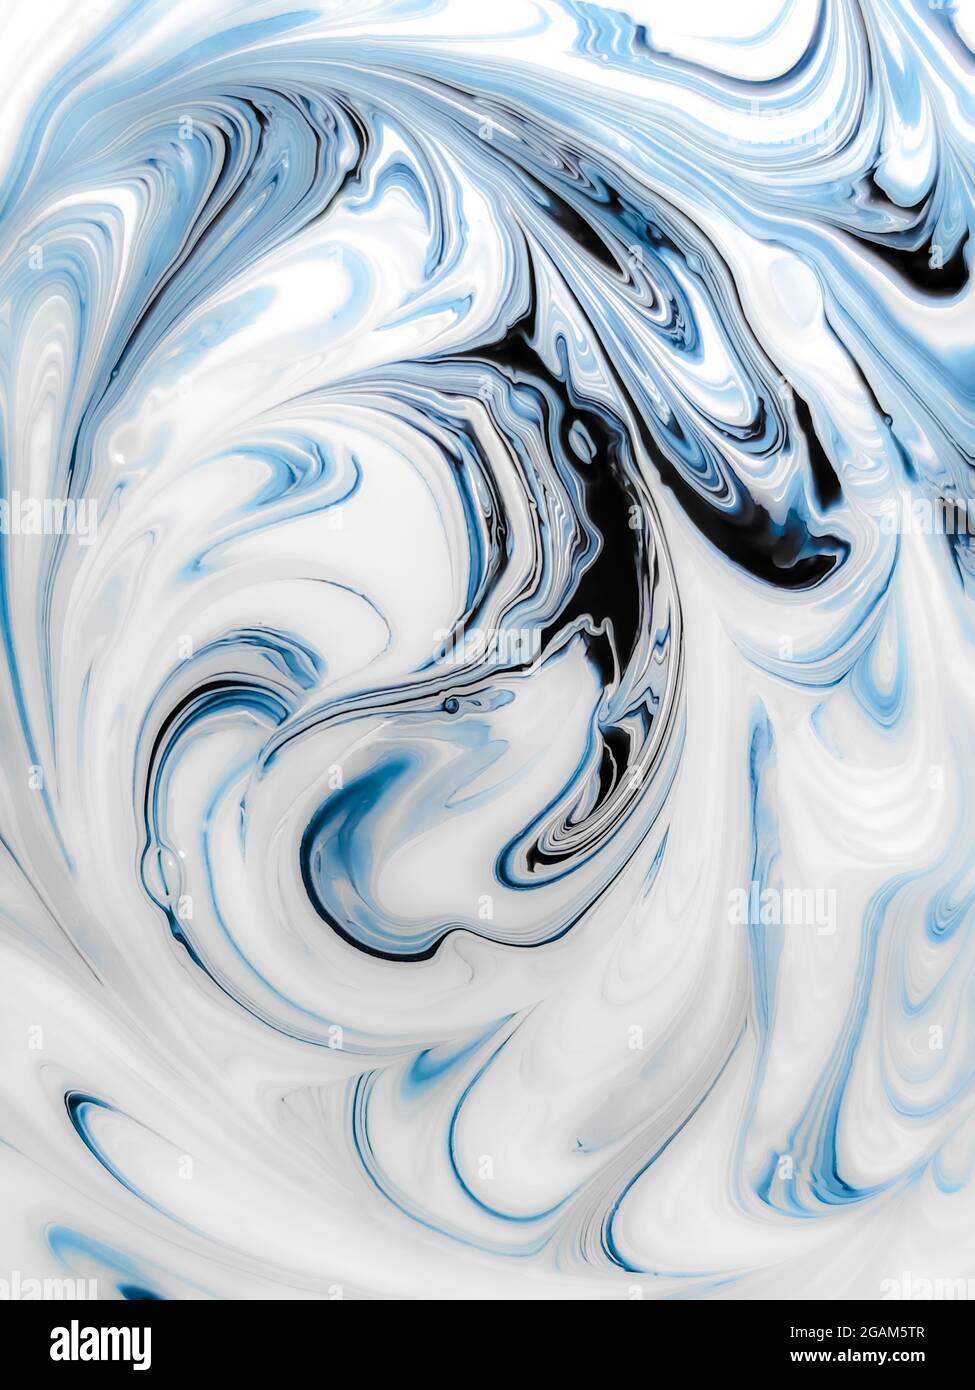 Hintergrund einer abstrakten blau-weißen Zeichnung, mehrschichtiges Muster aus gemischter Farbe, gekrümmte Linien in Nahaufnahme, weicher Fokus Stockfoto